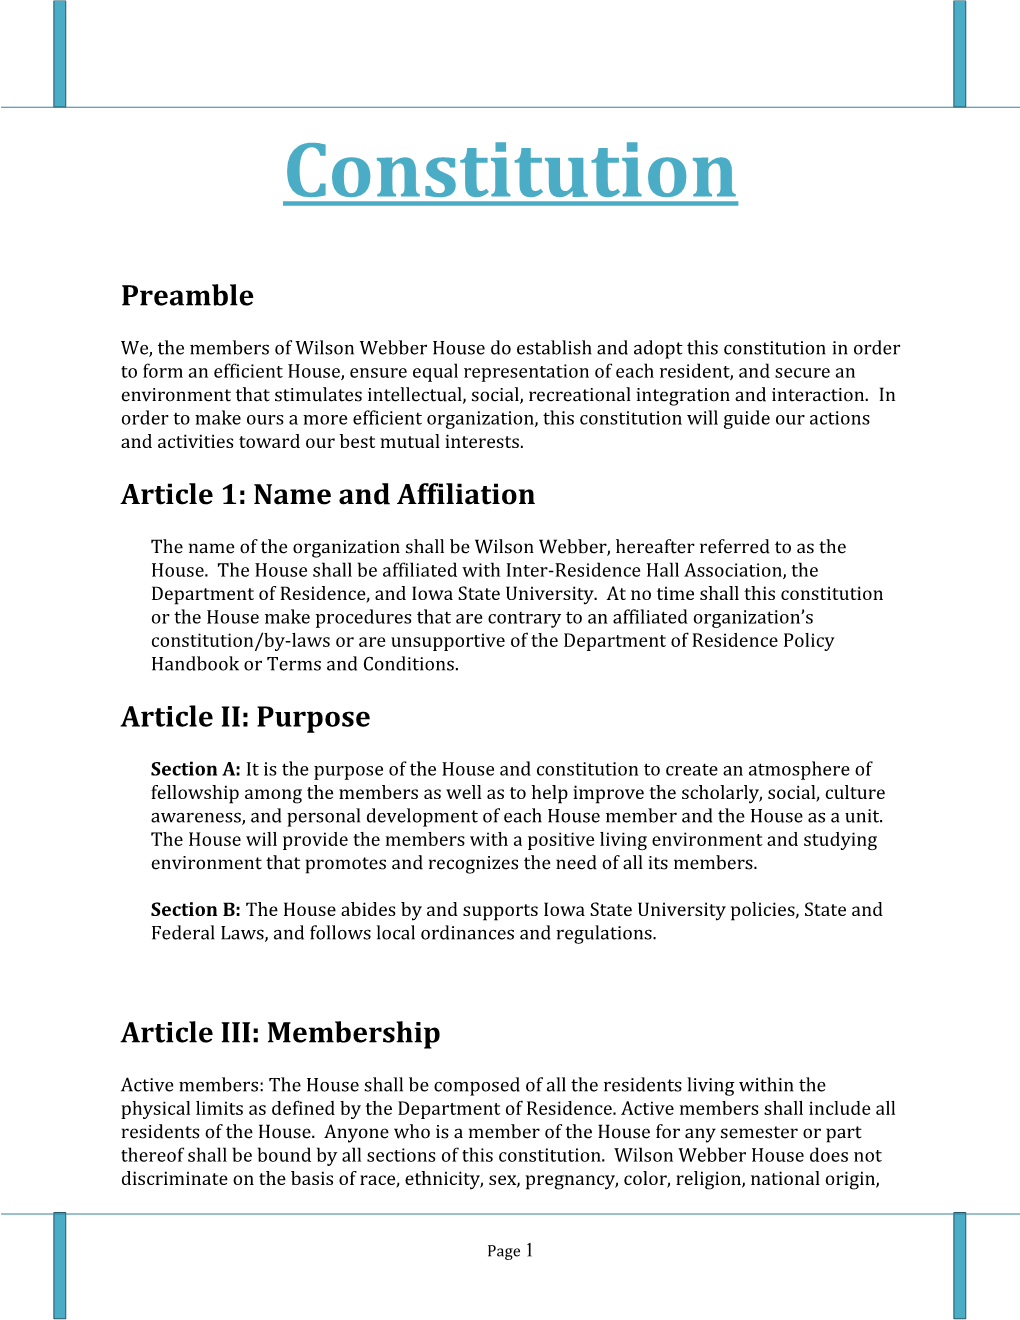 Wilson Owens Constitution